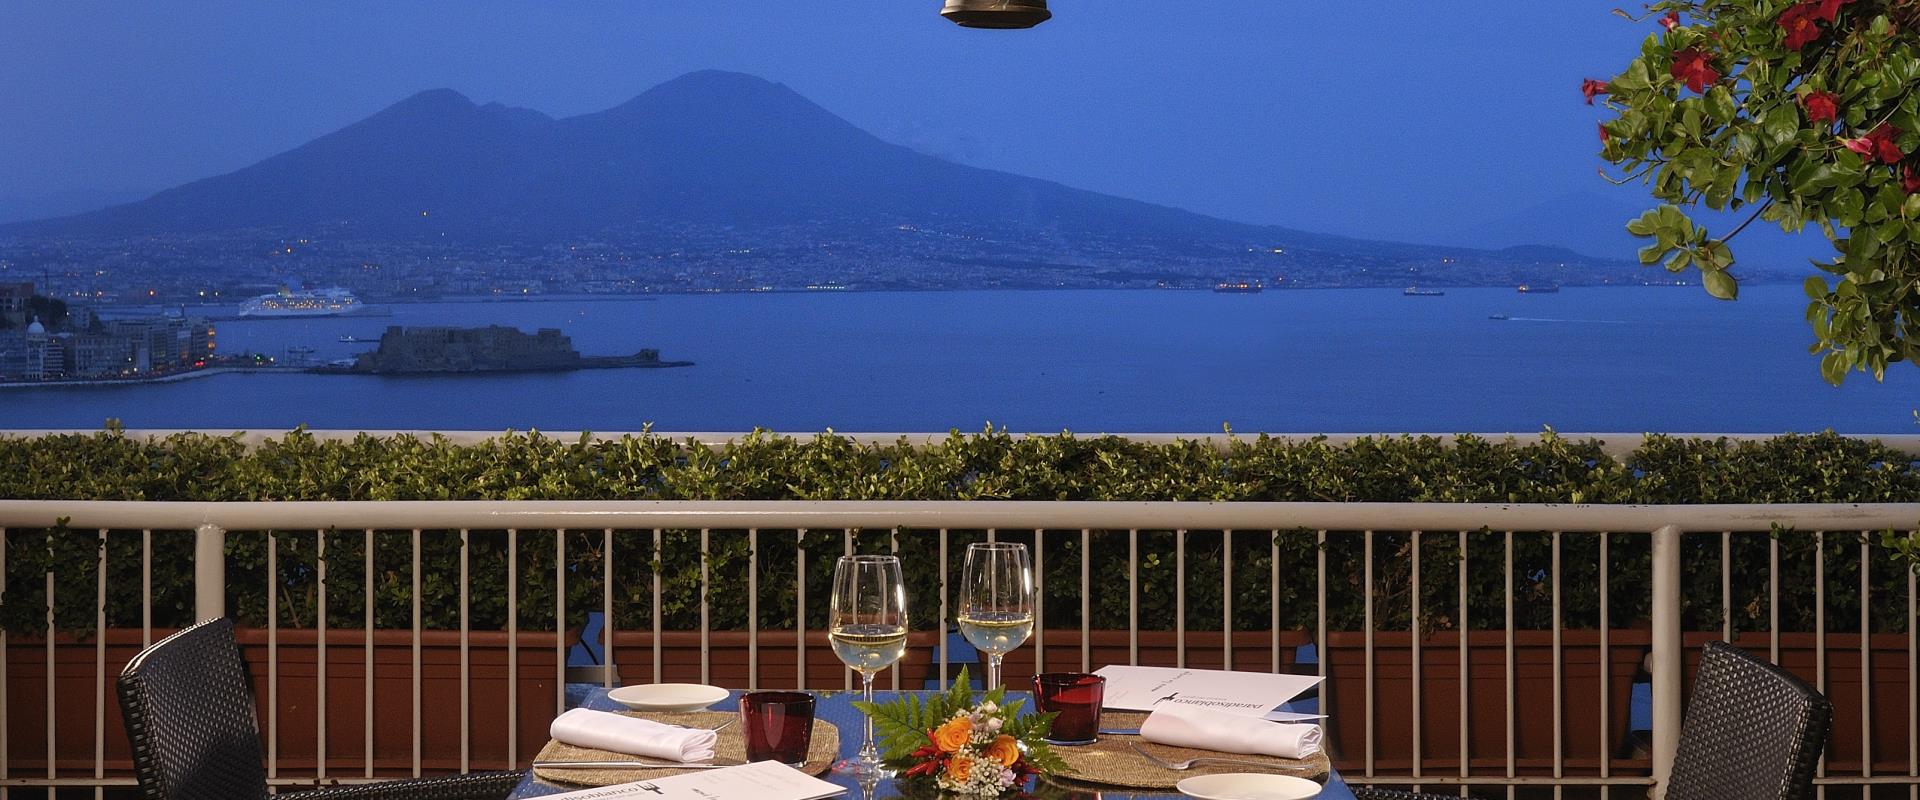 Romantisches Abendessen im Golf von Neapel